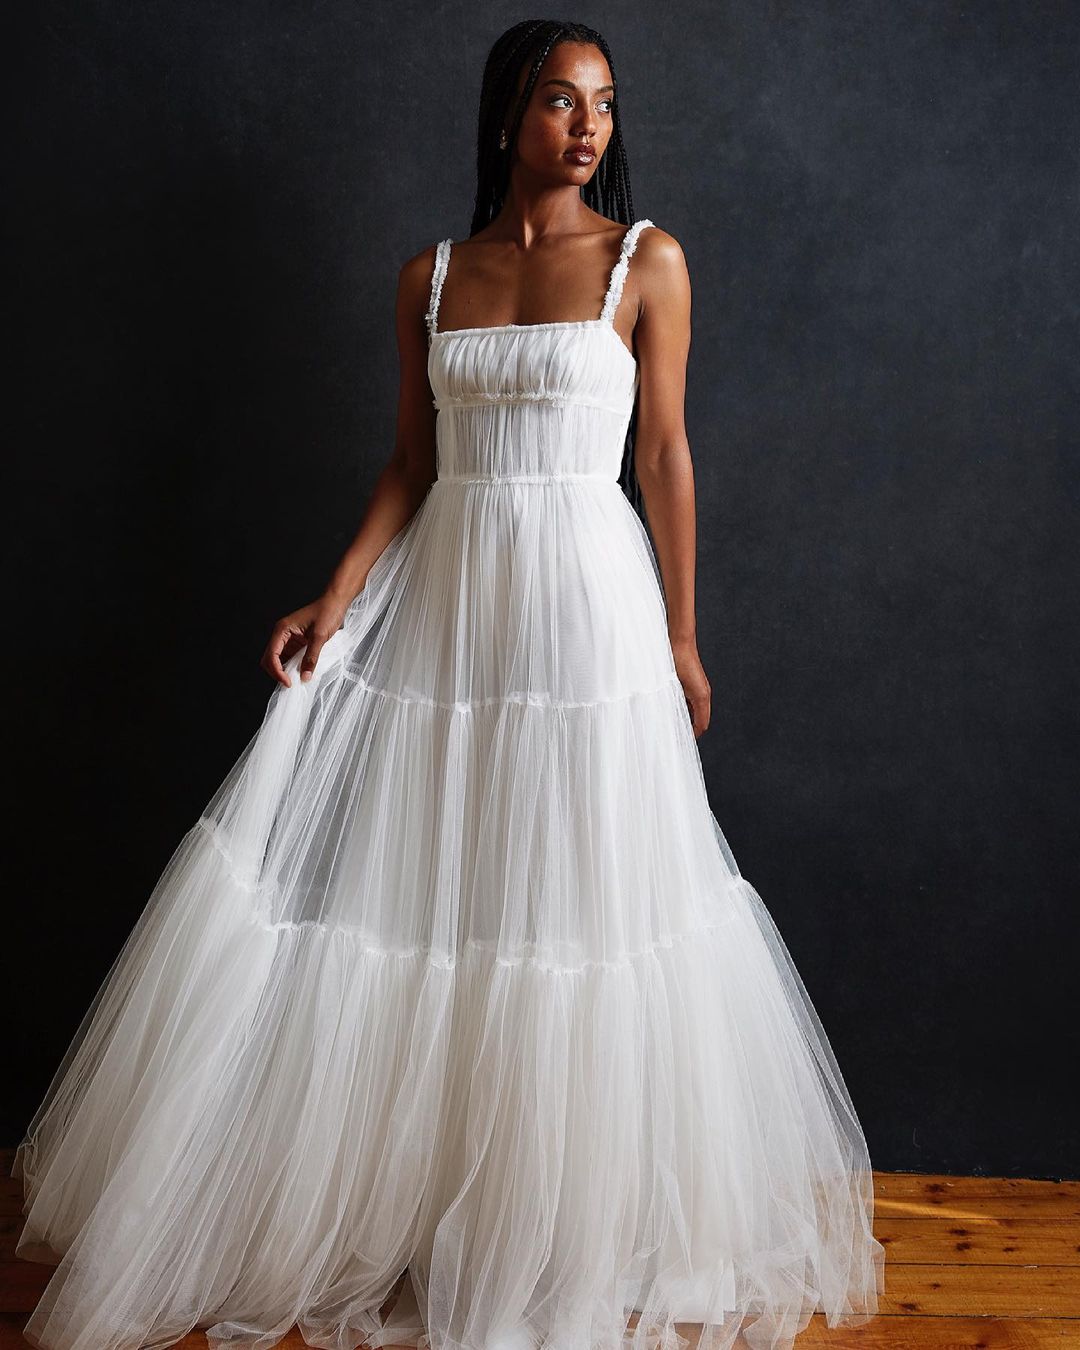 Harriett Gordon Bridal Musings Editors Favorite Wedding Dresses 2021 2022 Brides Claire Eliza Christina Castello 8 - 20 chiếc váy cưới đẹp nhất theo biên tập viên của chúng tôi